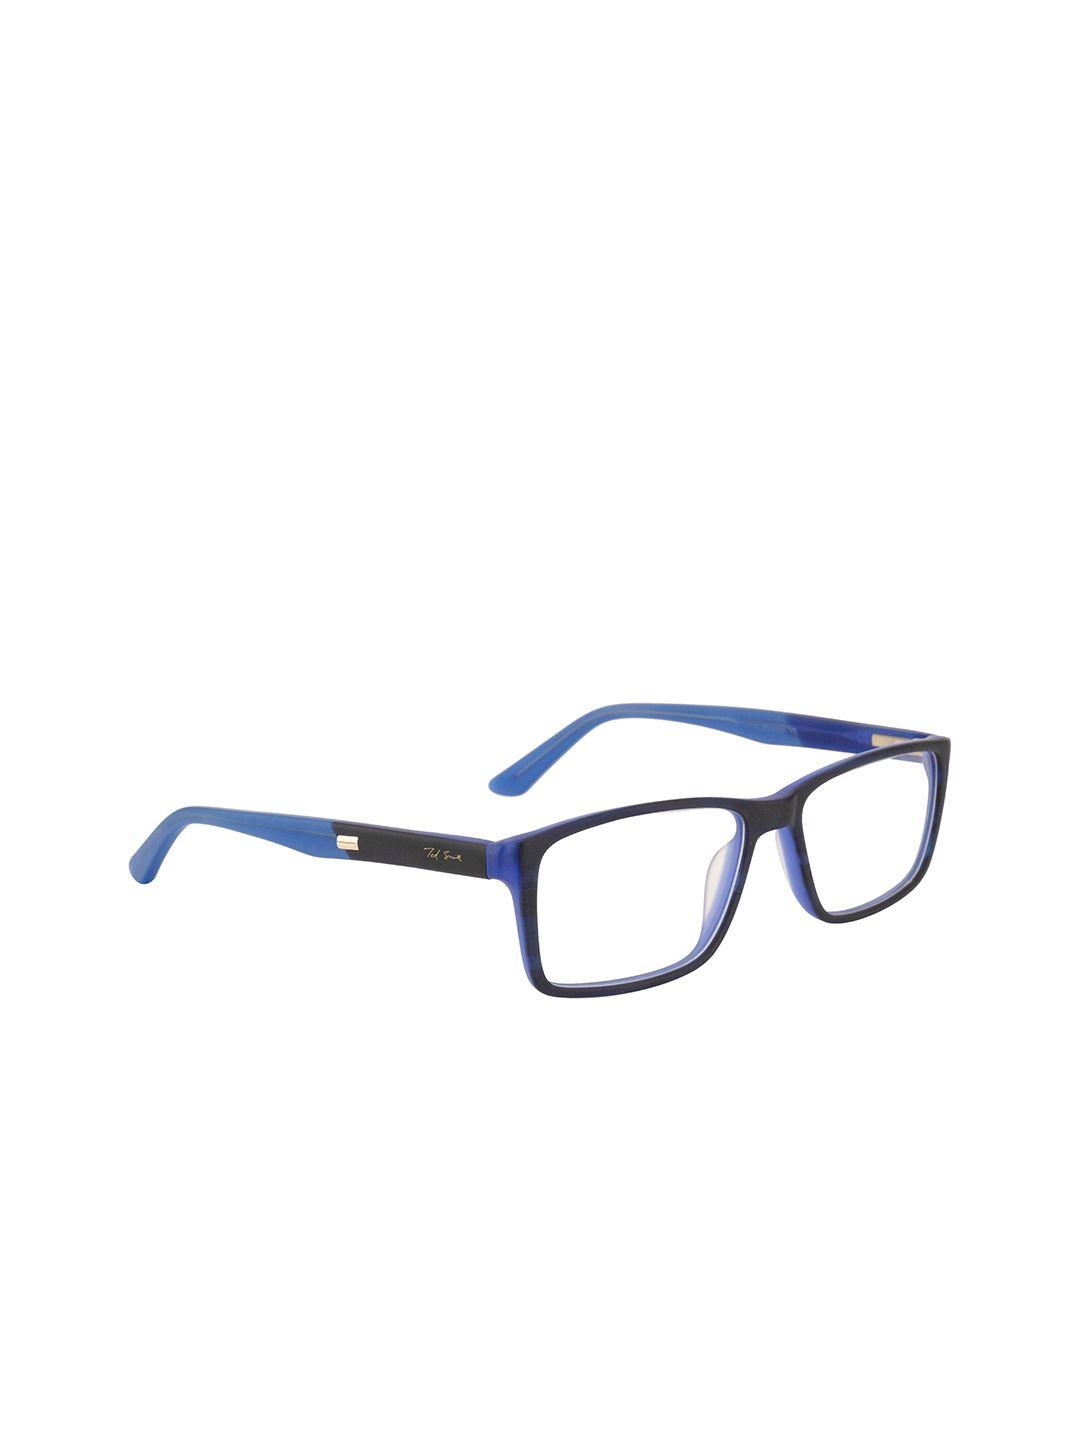 ted smith unisex blue & black colourblocked full rim rectangle frames eyeglasses